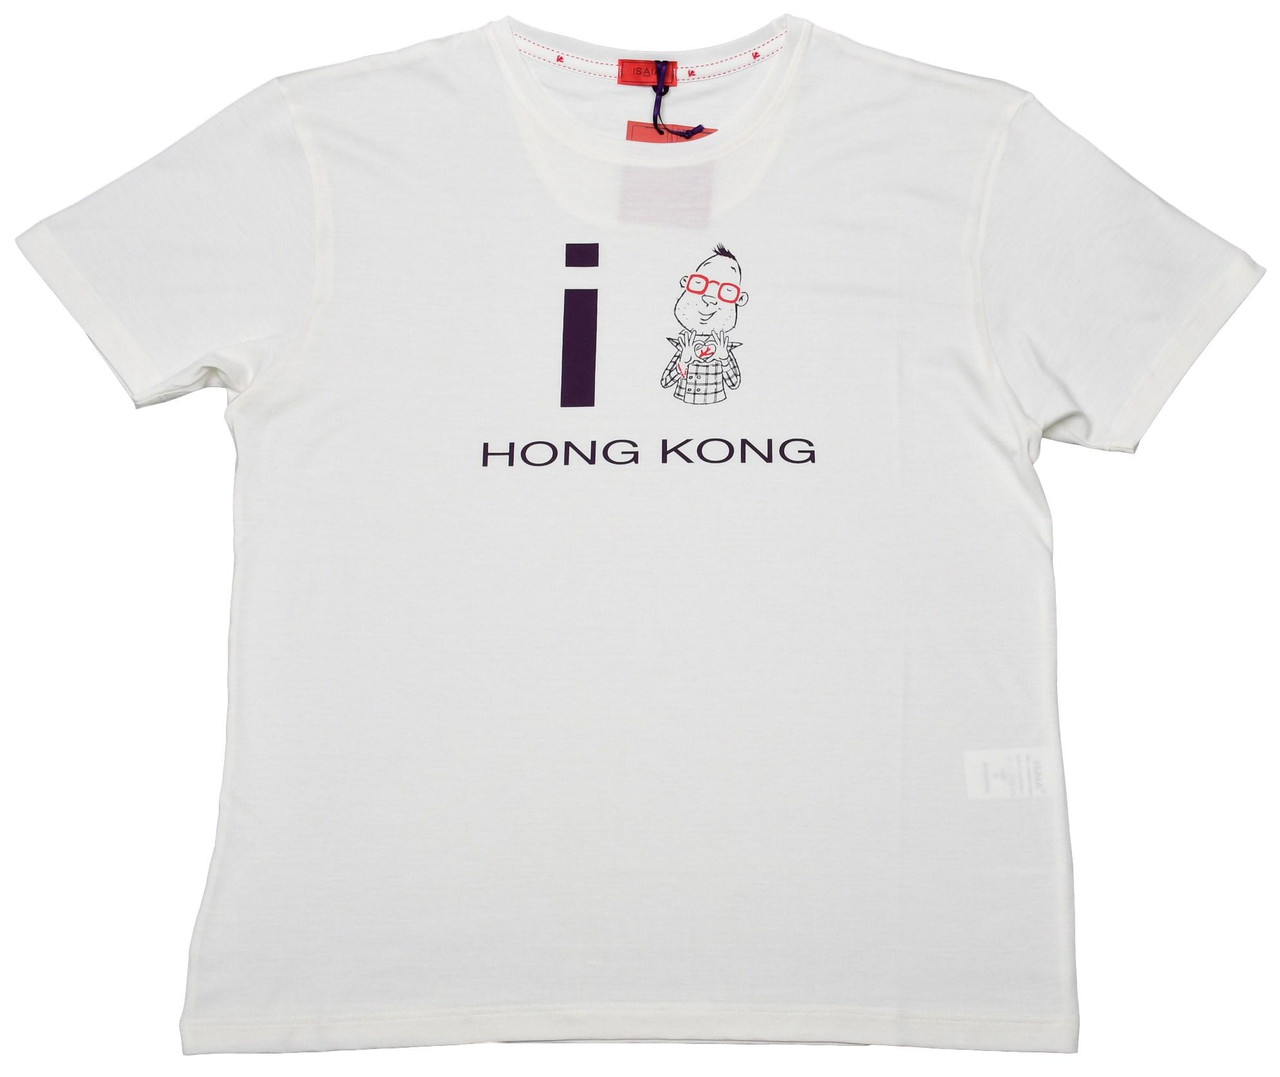 Isaia Love Hong Kong T-Shirt Size XSmall Off White 06TS0101